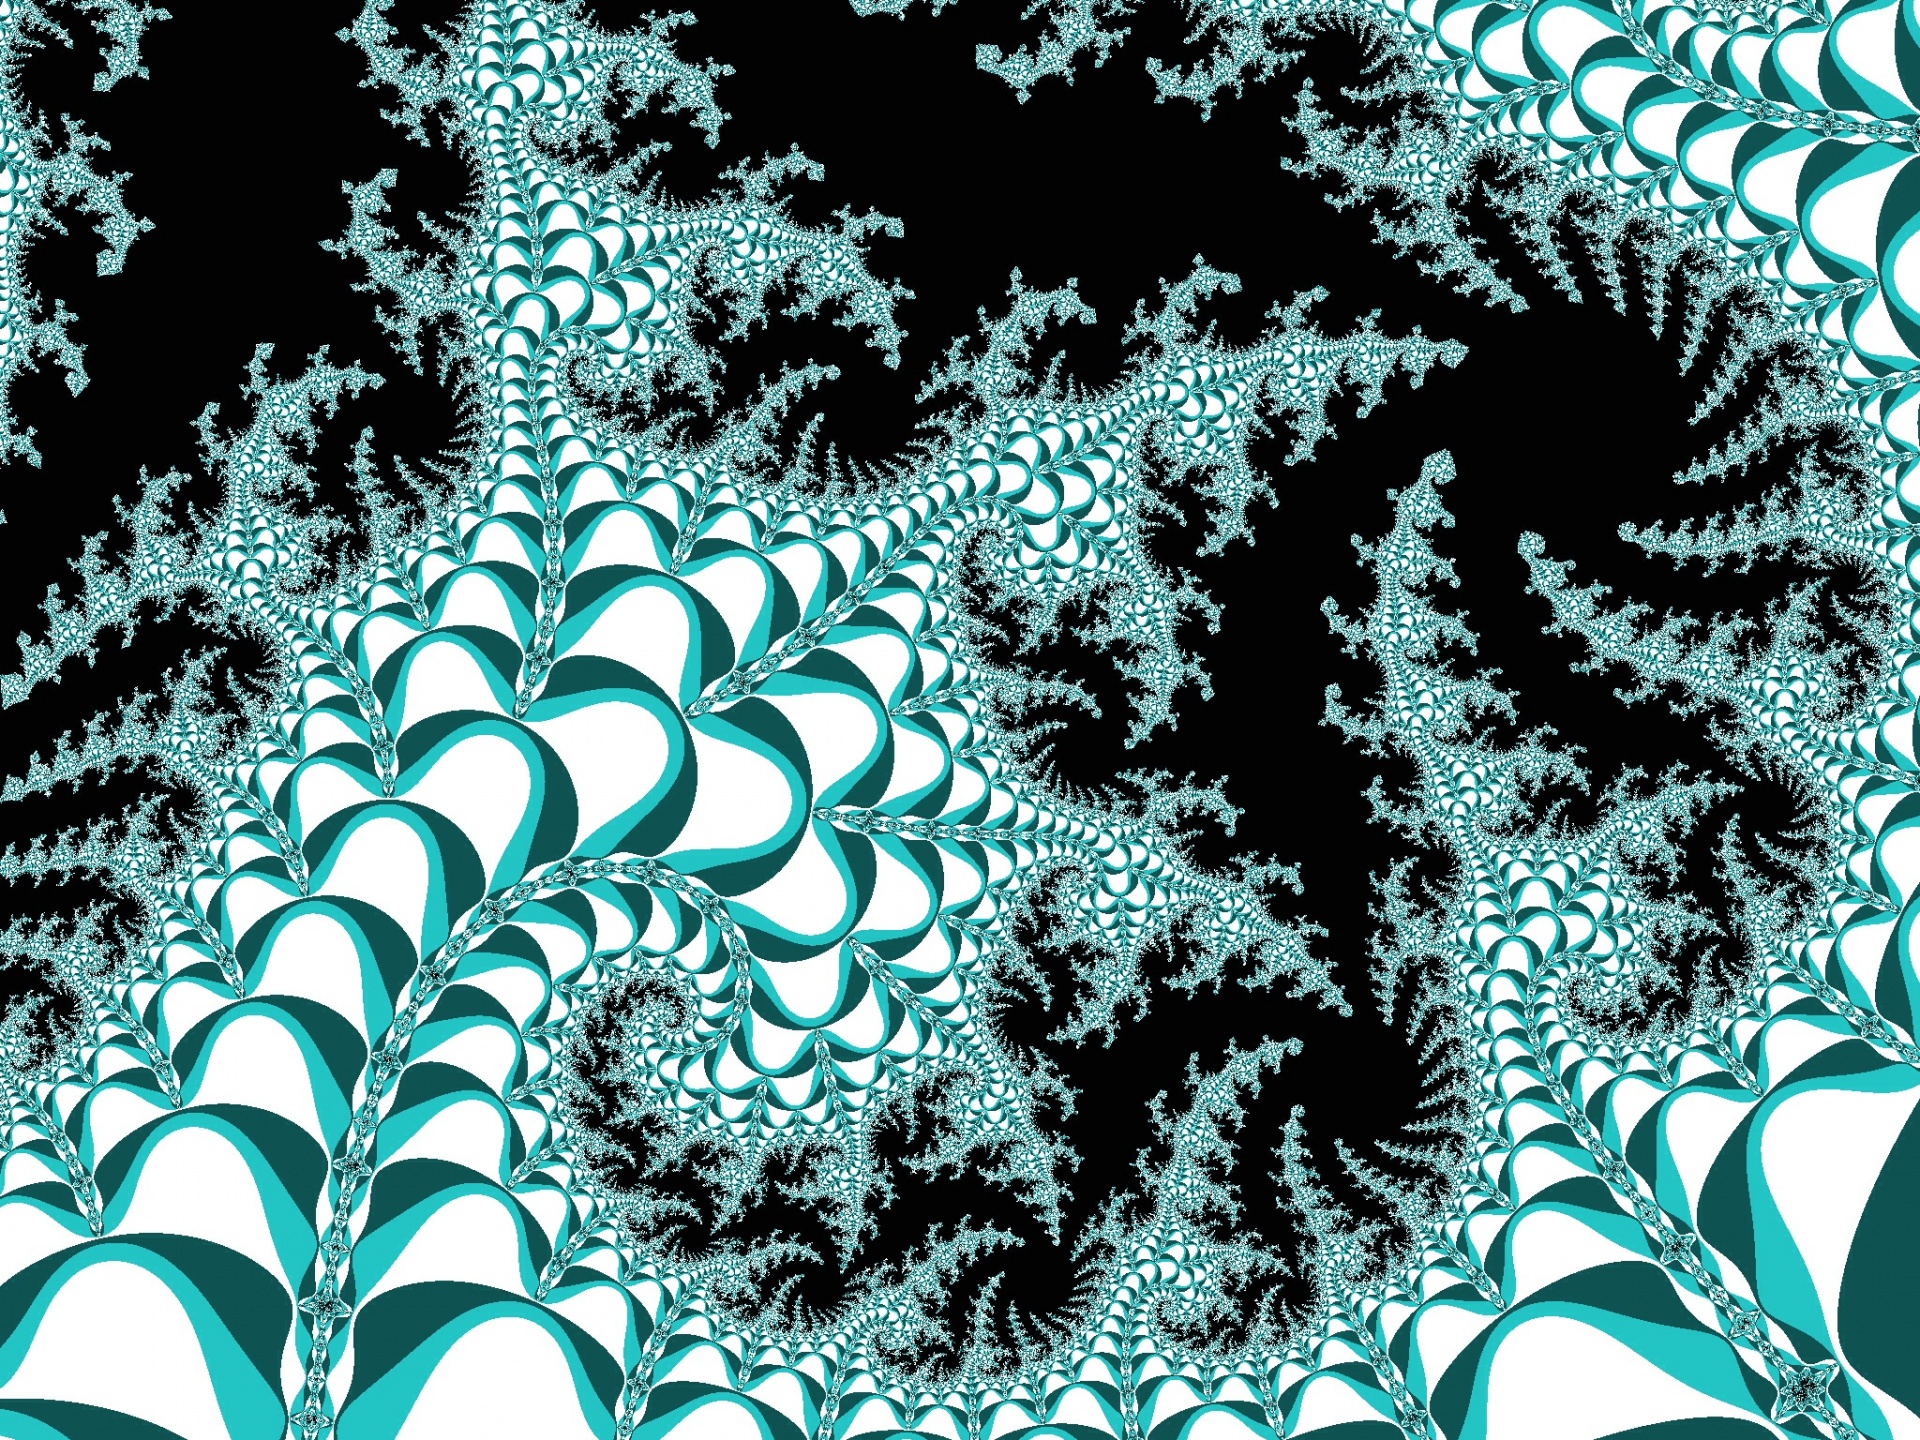 Fractaal patroon in een blauwe kleuren